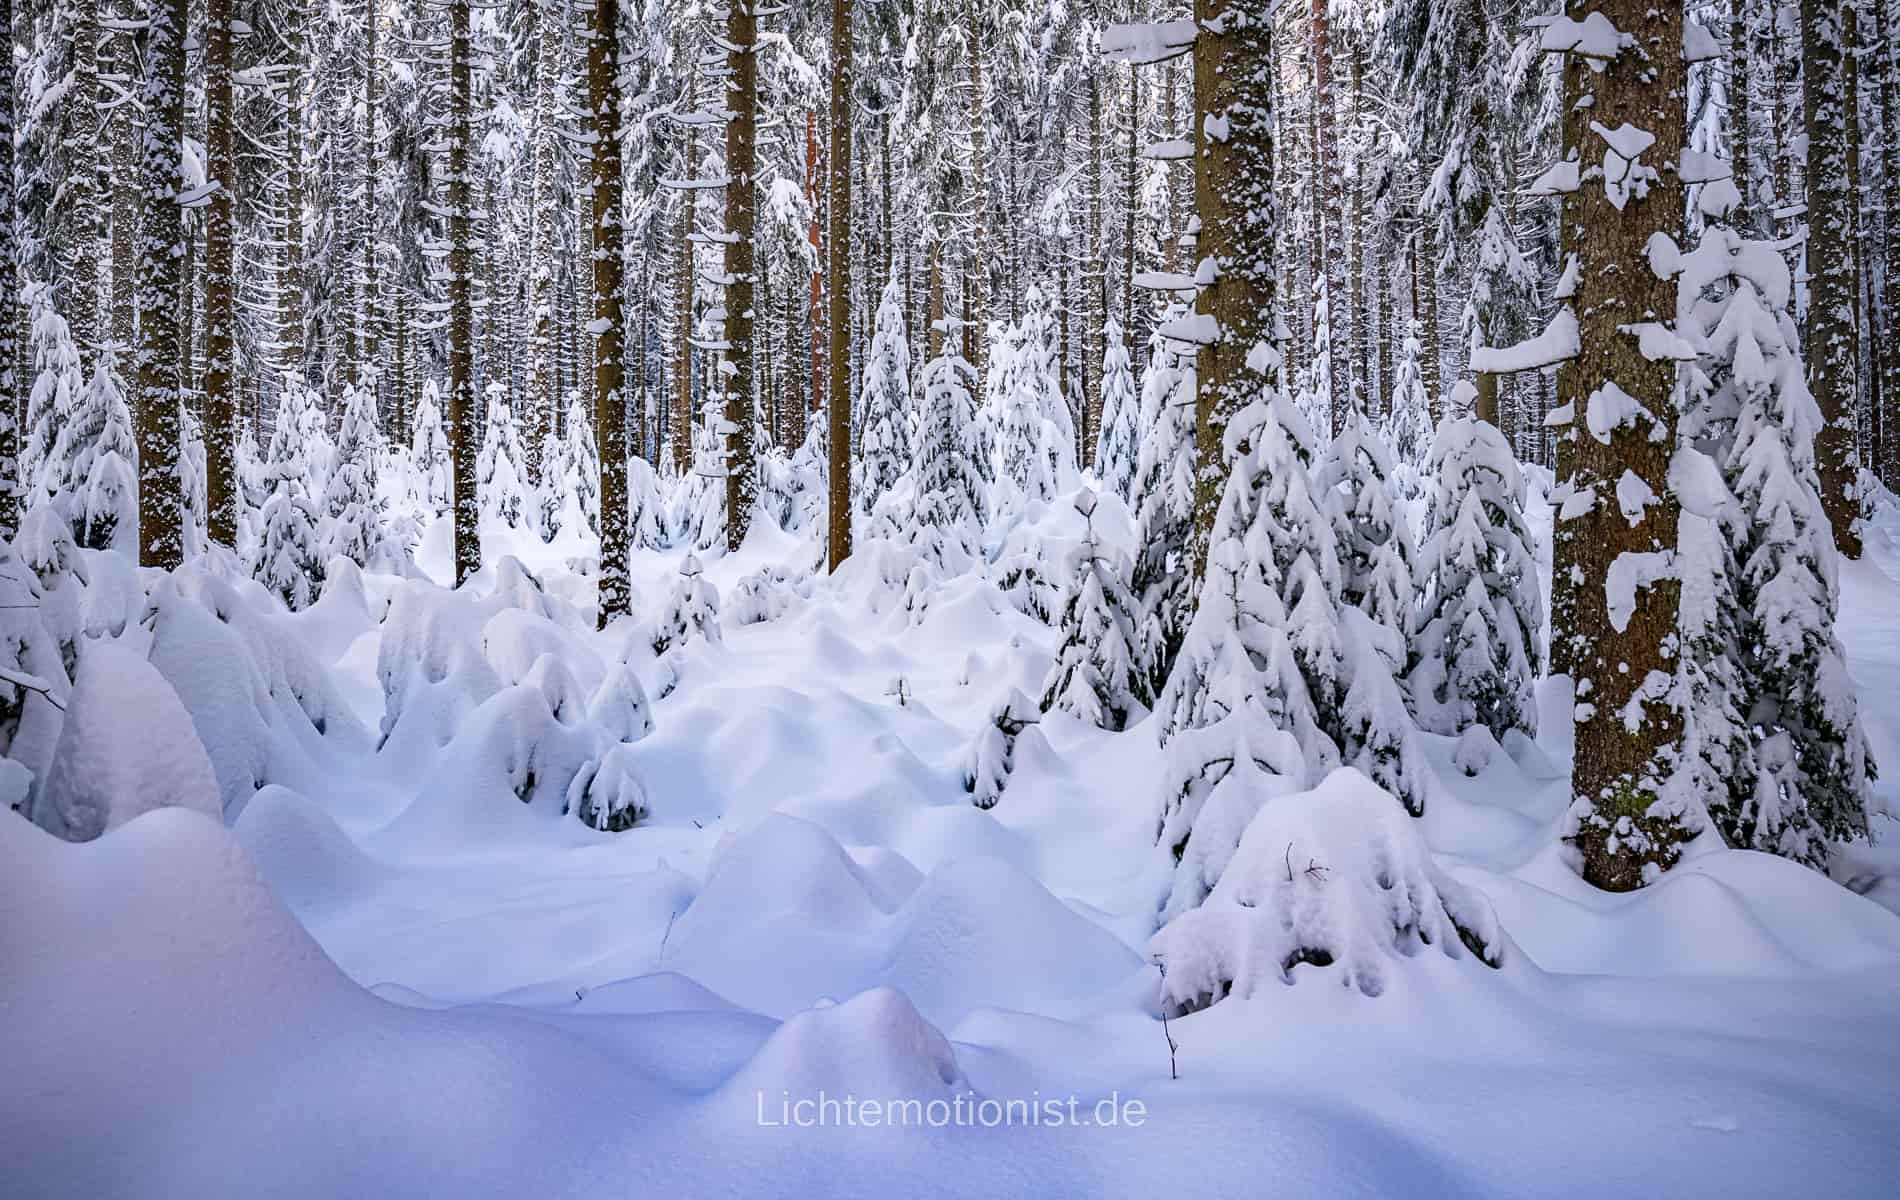 Wald voll mit Schnee | Lichtemotionist